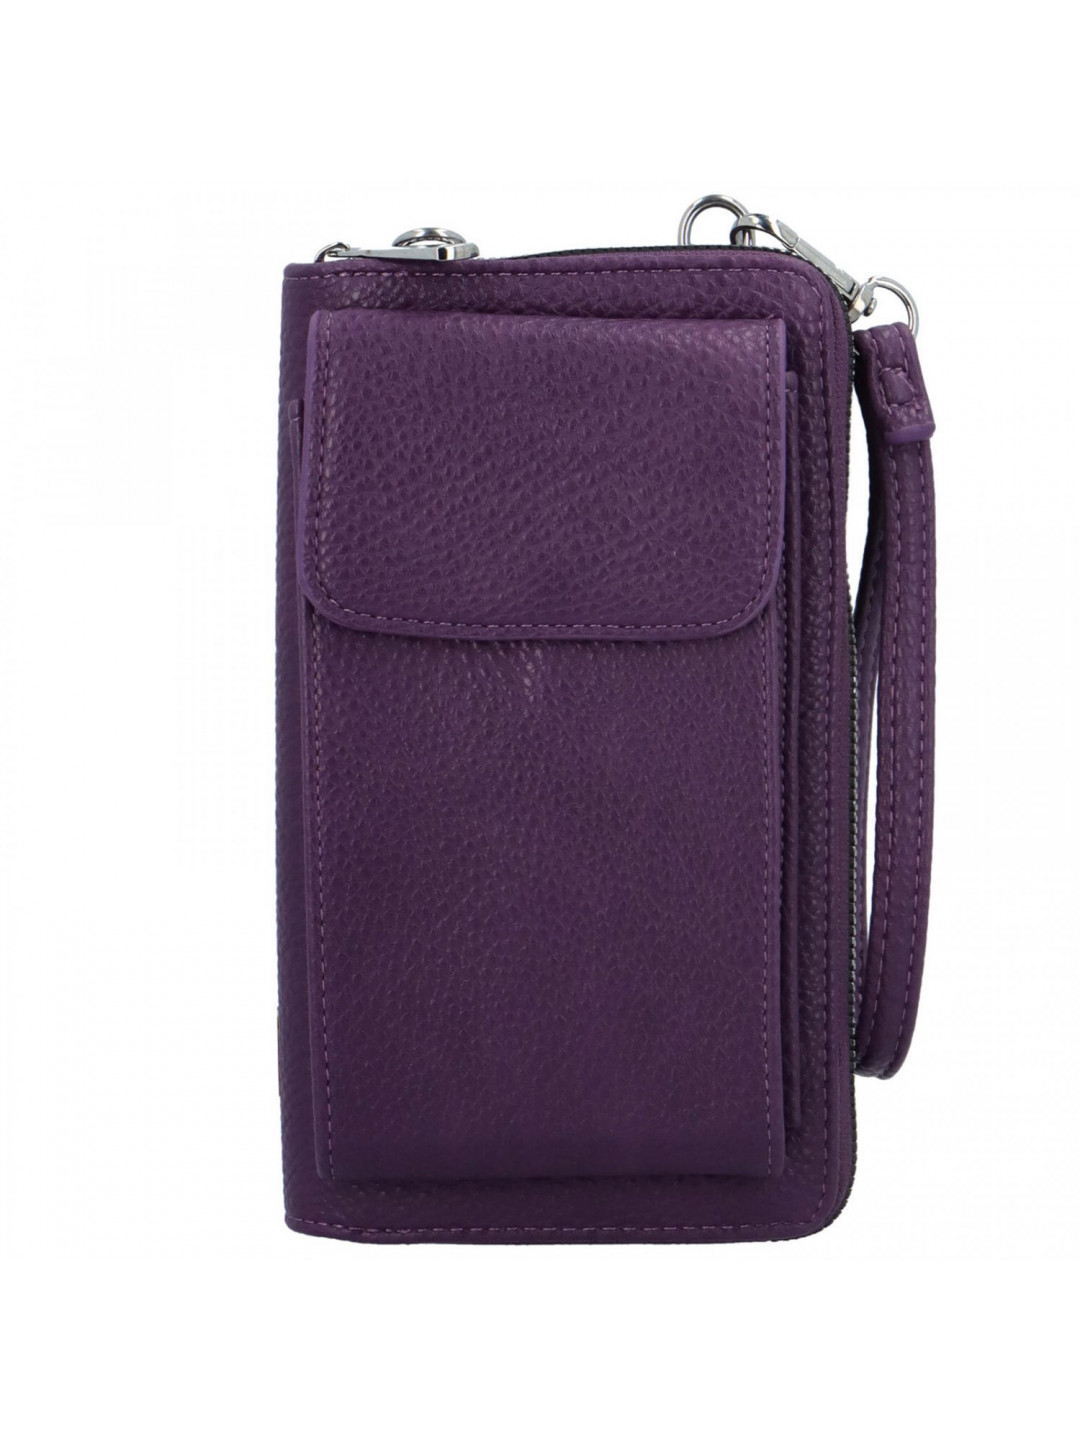 Trendy dámská mini kabelka na mobil Anney fialová